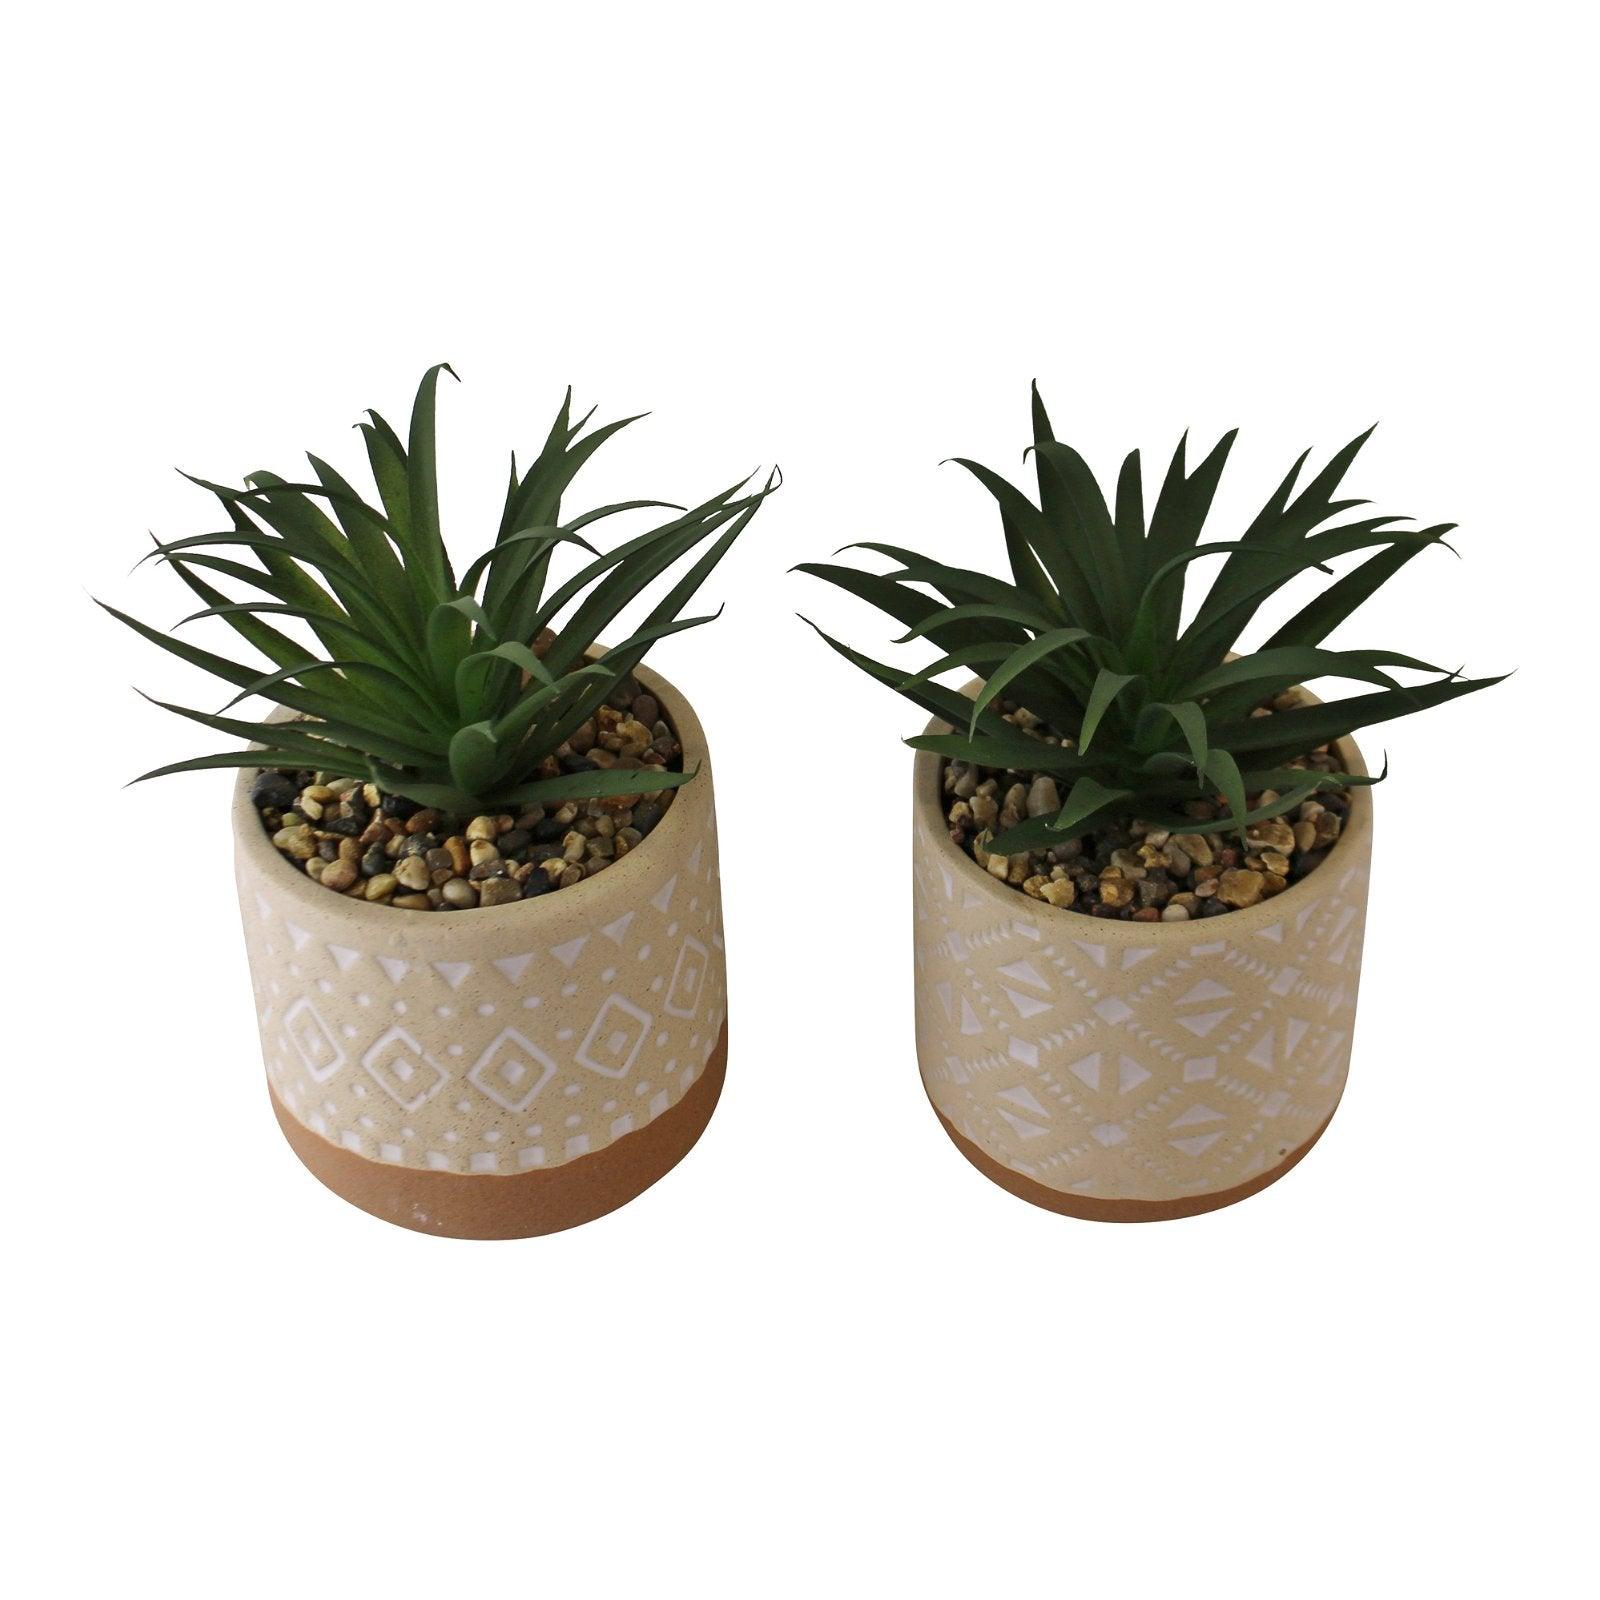 Set of 2 Faux Succulents In Ceramic Pots - £38.99 - Small Succulents & Faux Bonsai 